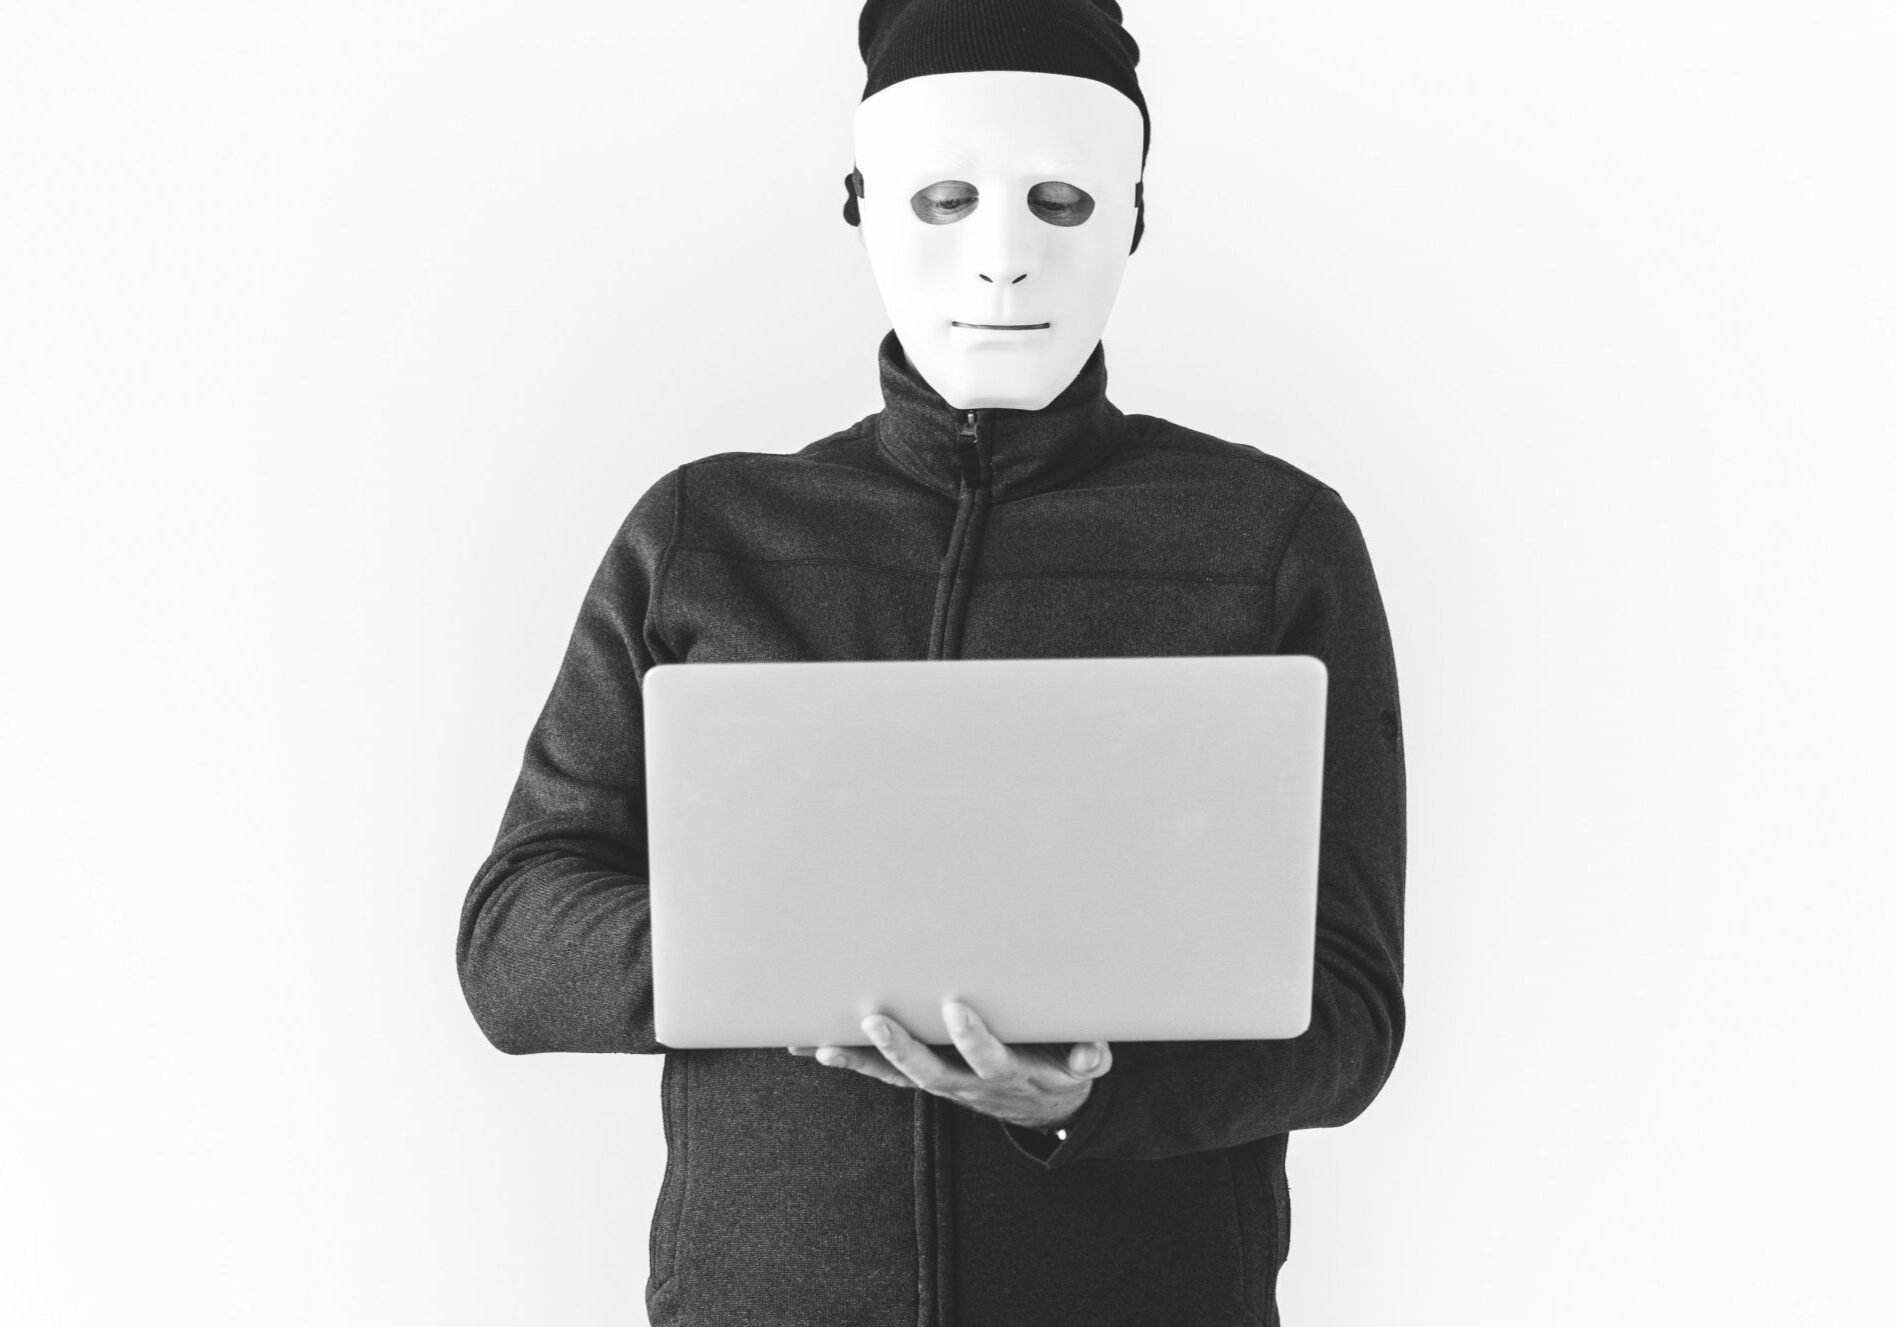 online fraud prevention